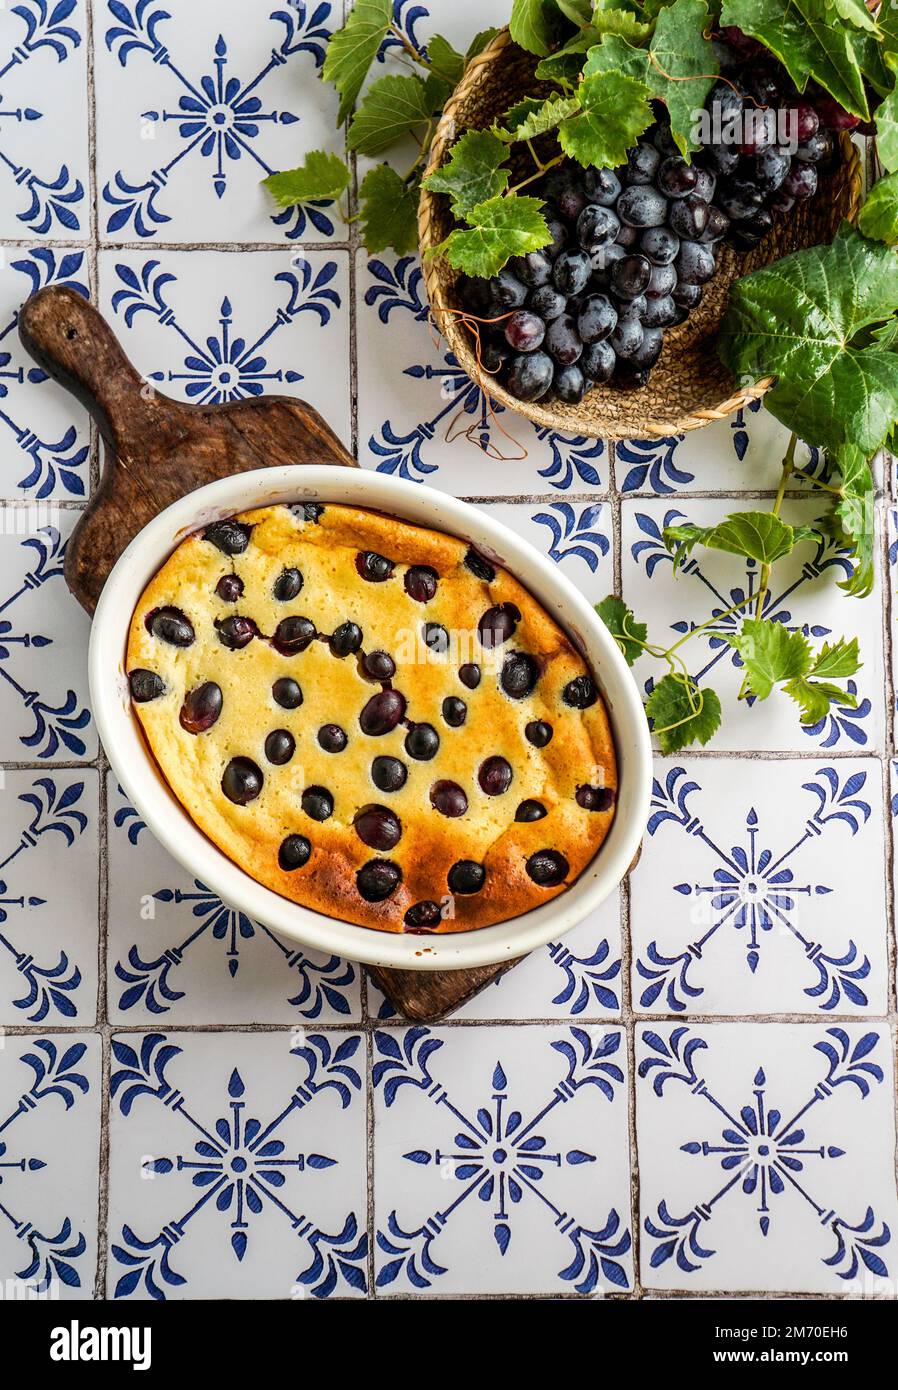 Clafoutis de raisin rouge, cuisine française. sur une table en carreaux de céramique avec un motif bleu. Banque D'Images